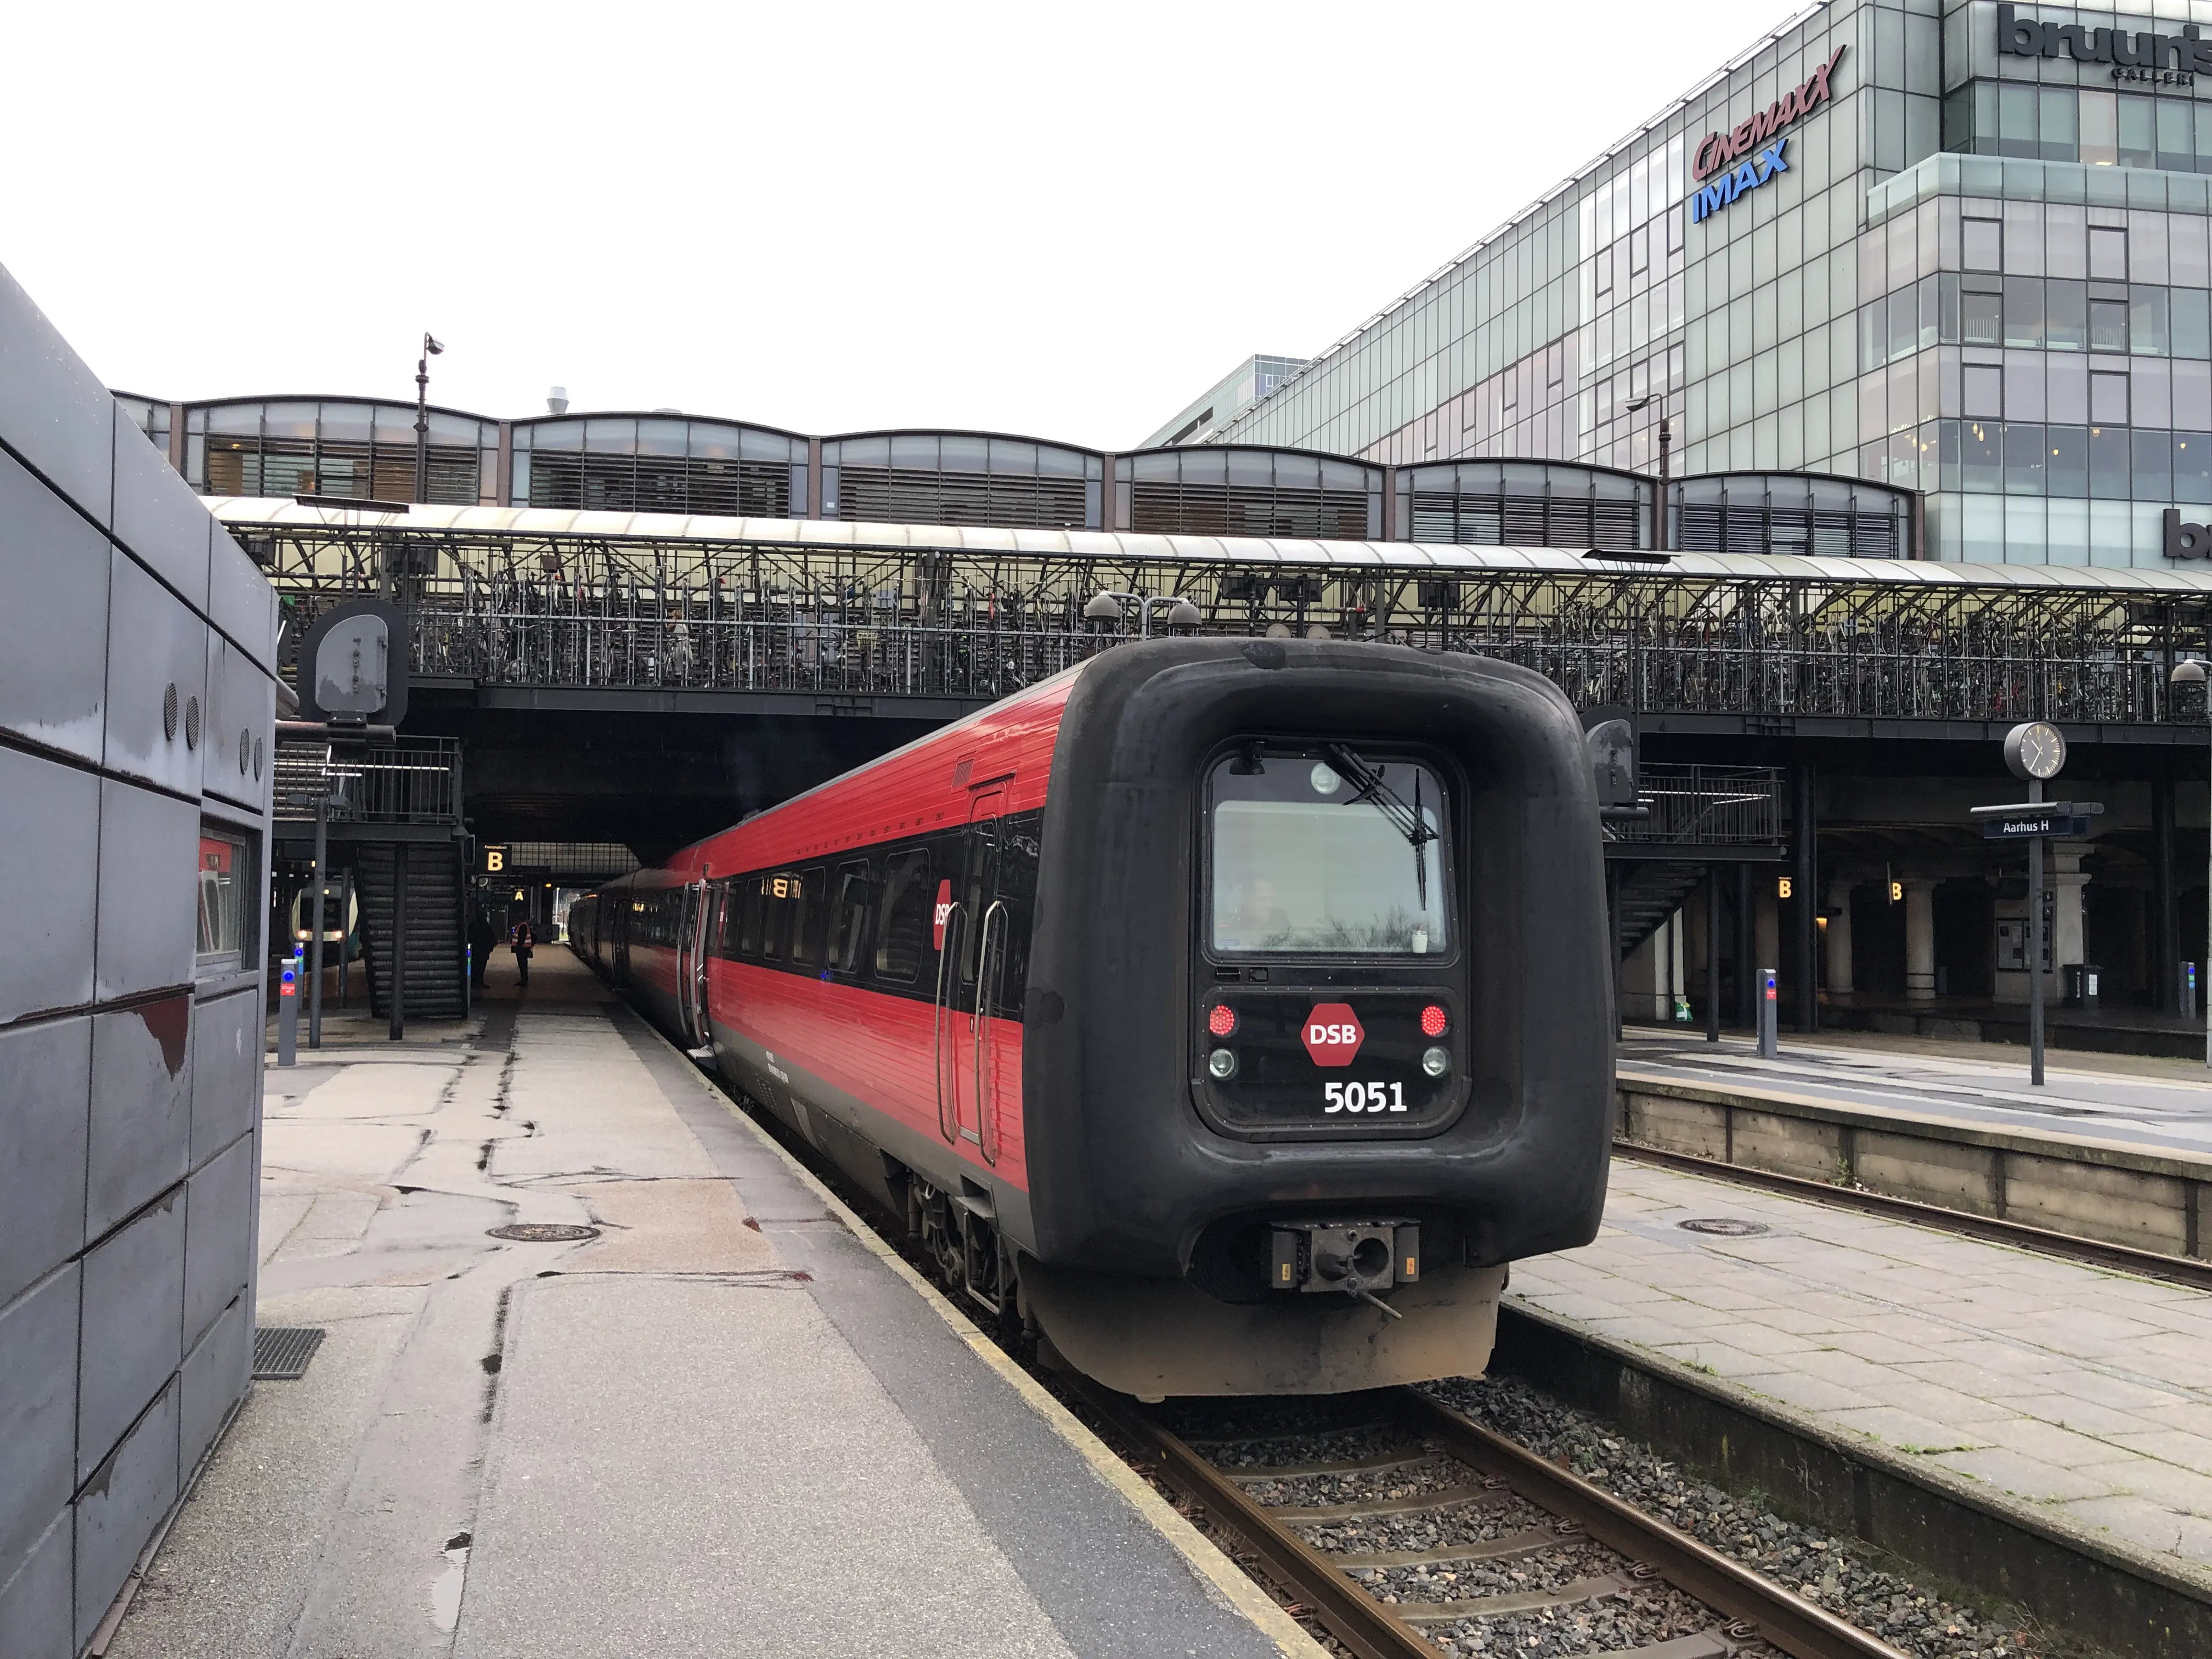 Aarhus H Station.